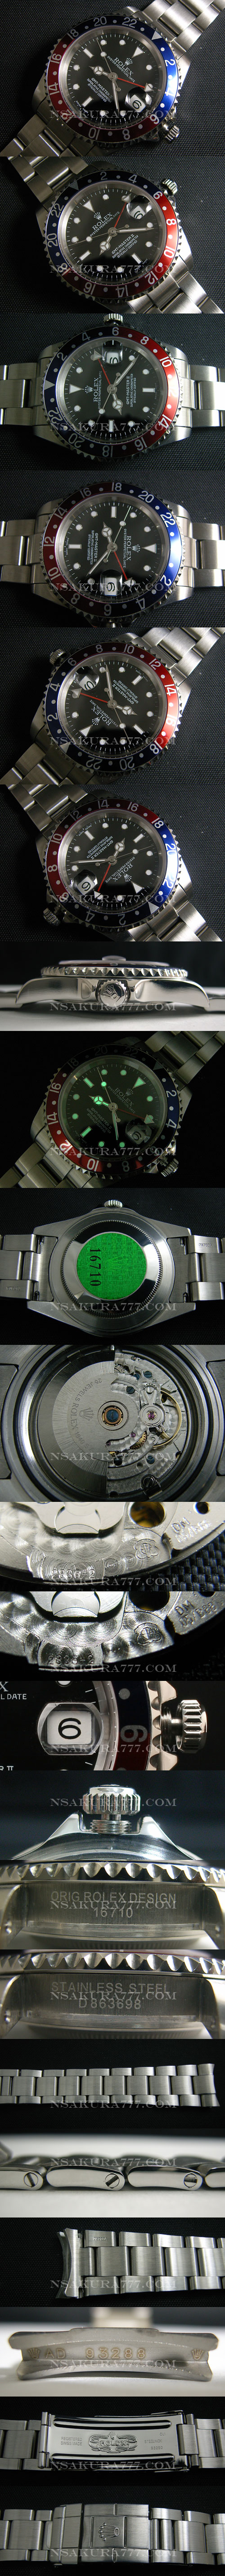 レプリカ時計ロレックス GMT マスター最新改良白2836-2搭載 - ウインドウを閉じる